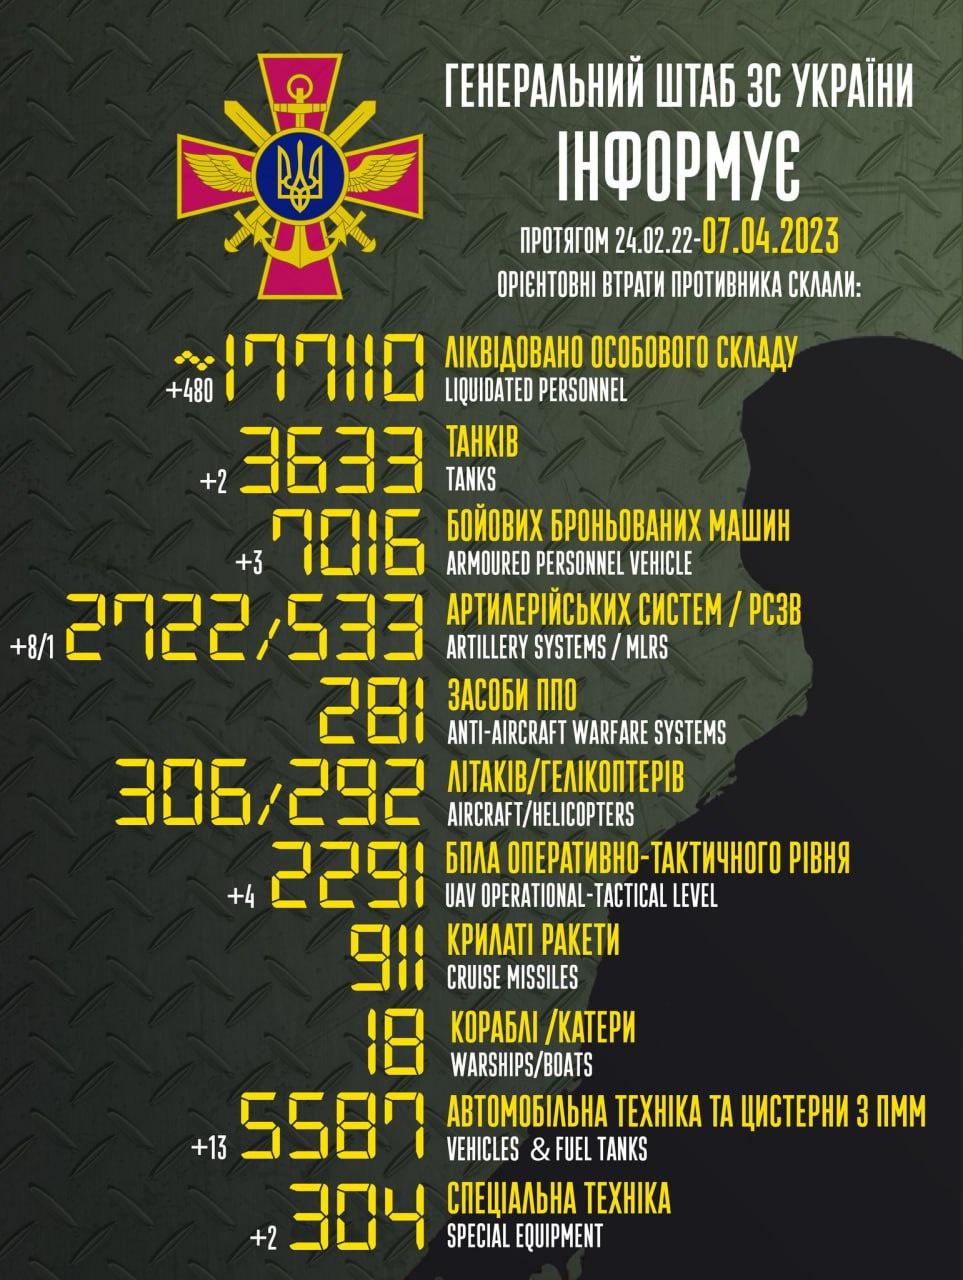 Russia’s losses in Ukraine as of seven/04/2023